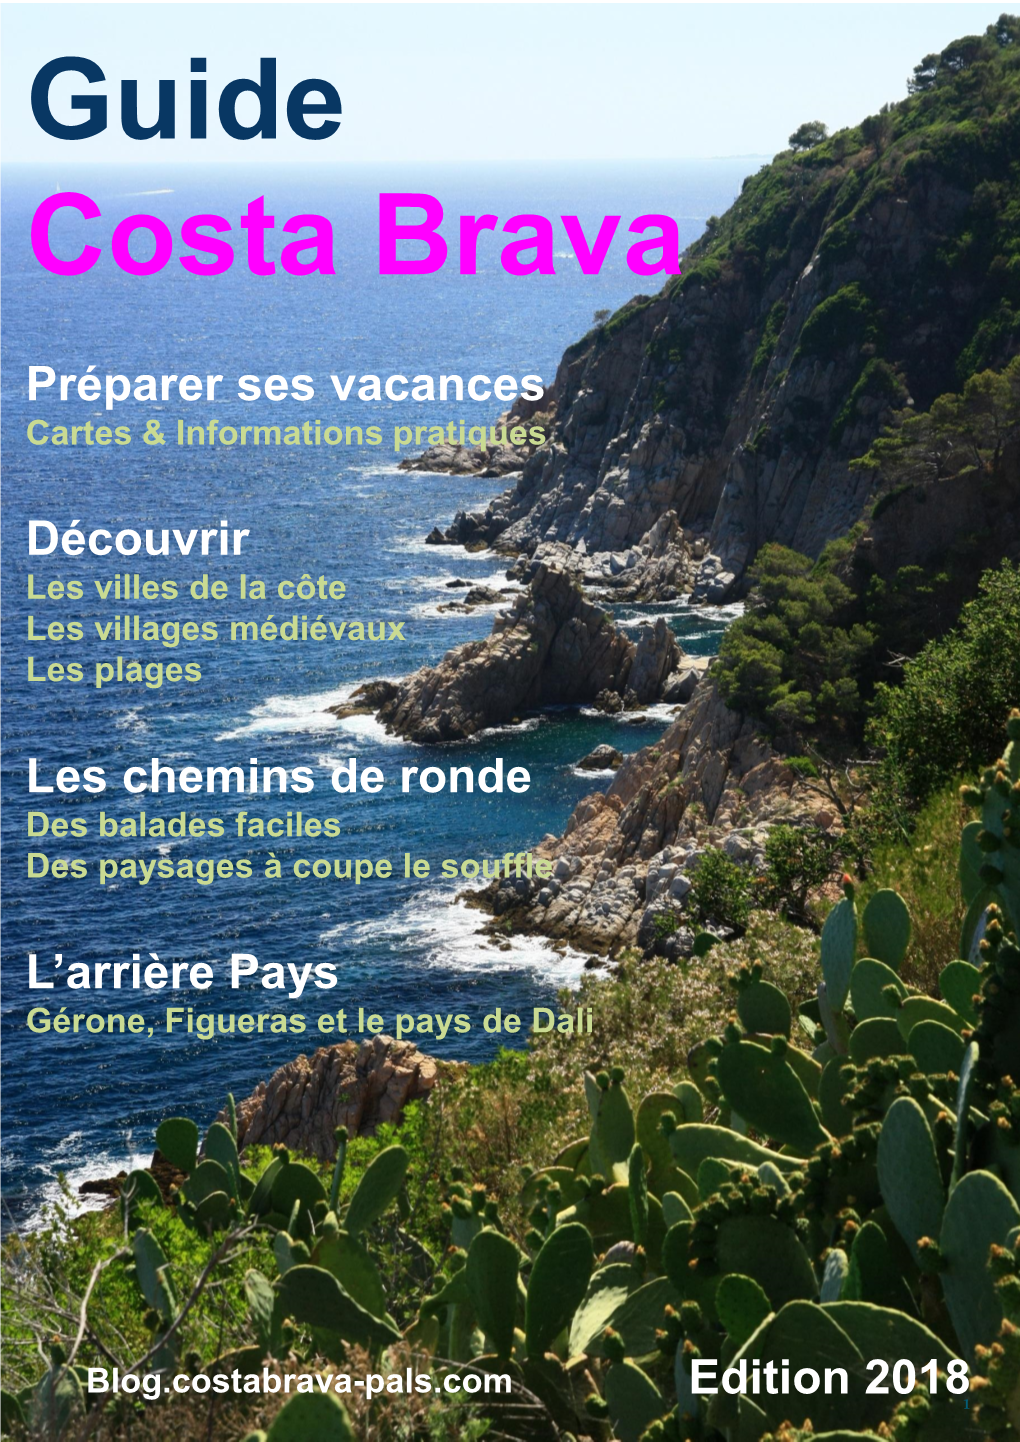 Guide Costa Brava